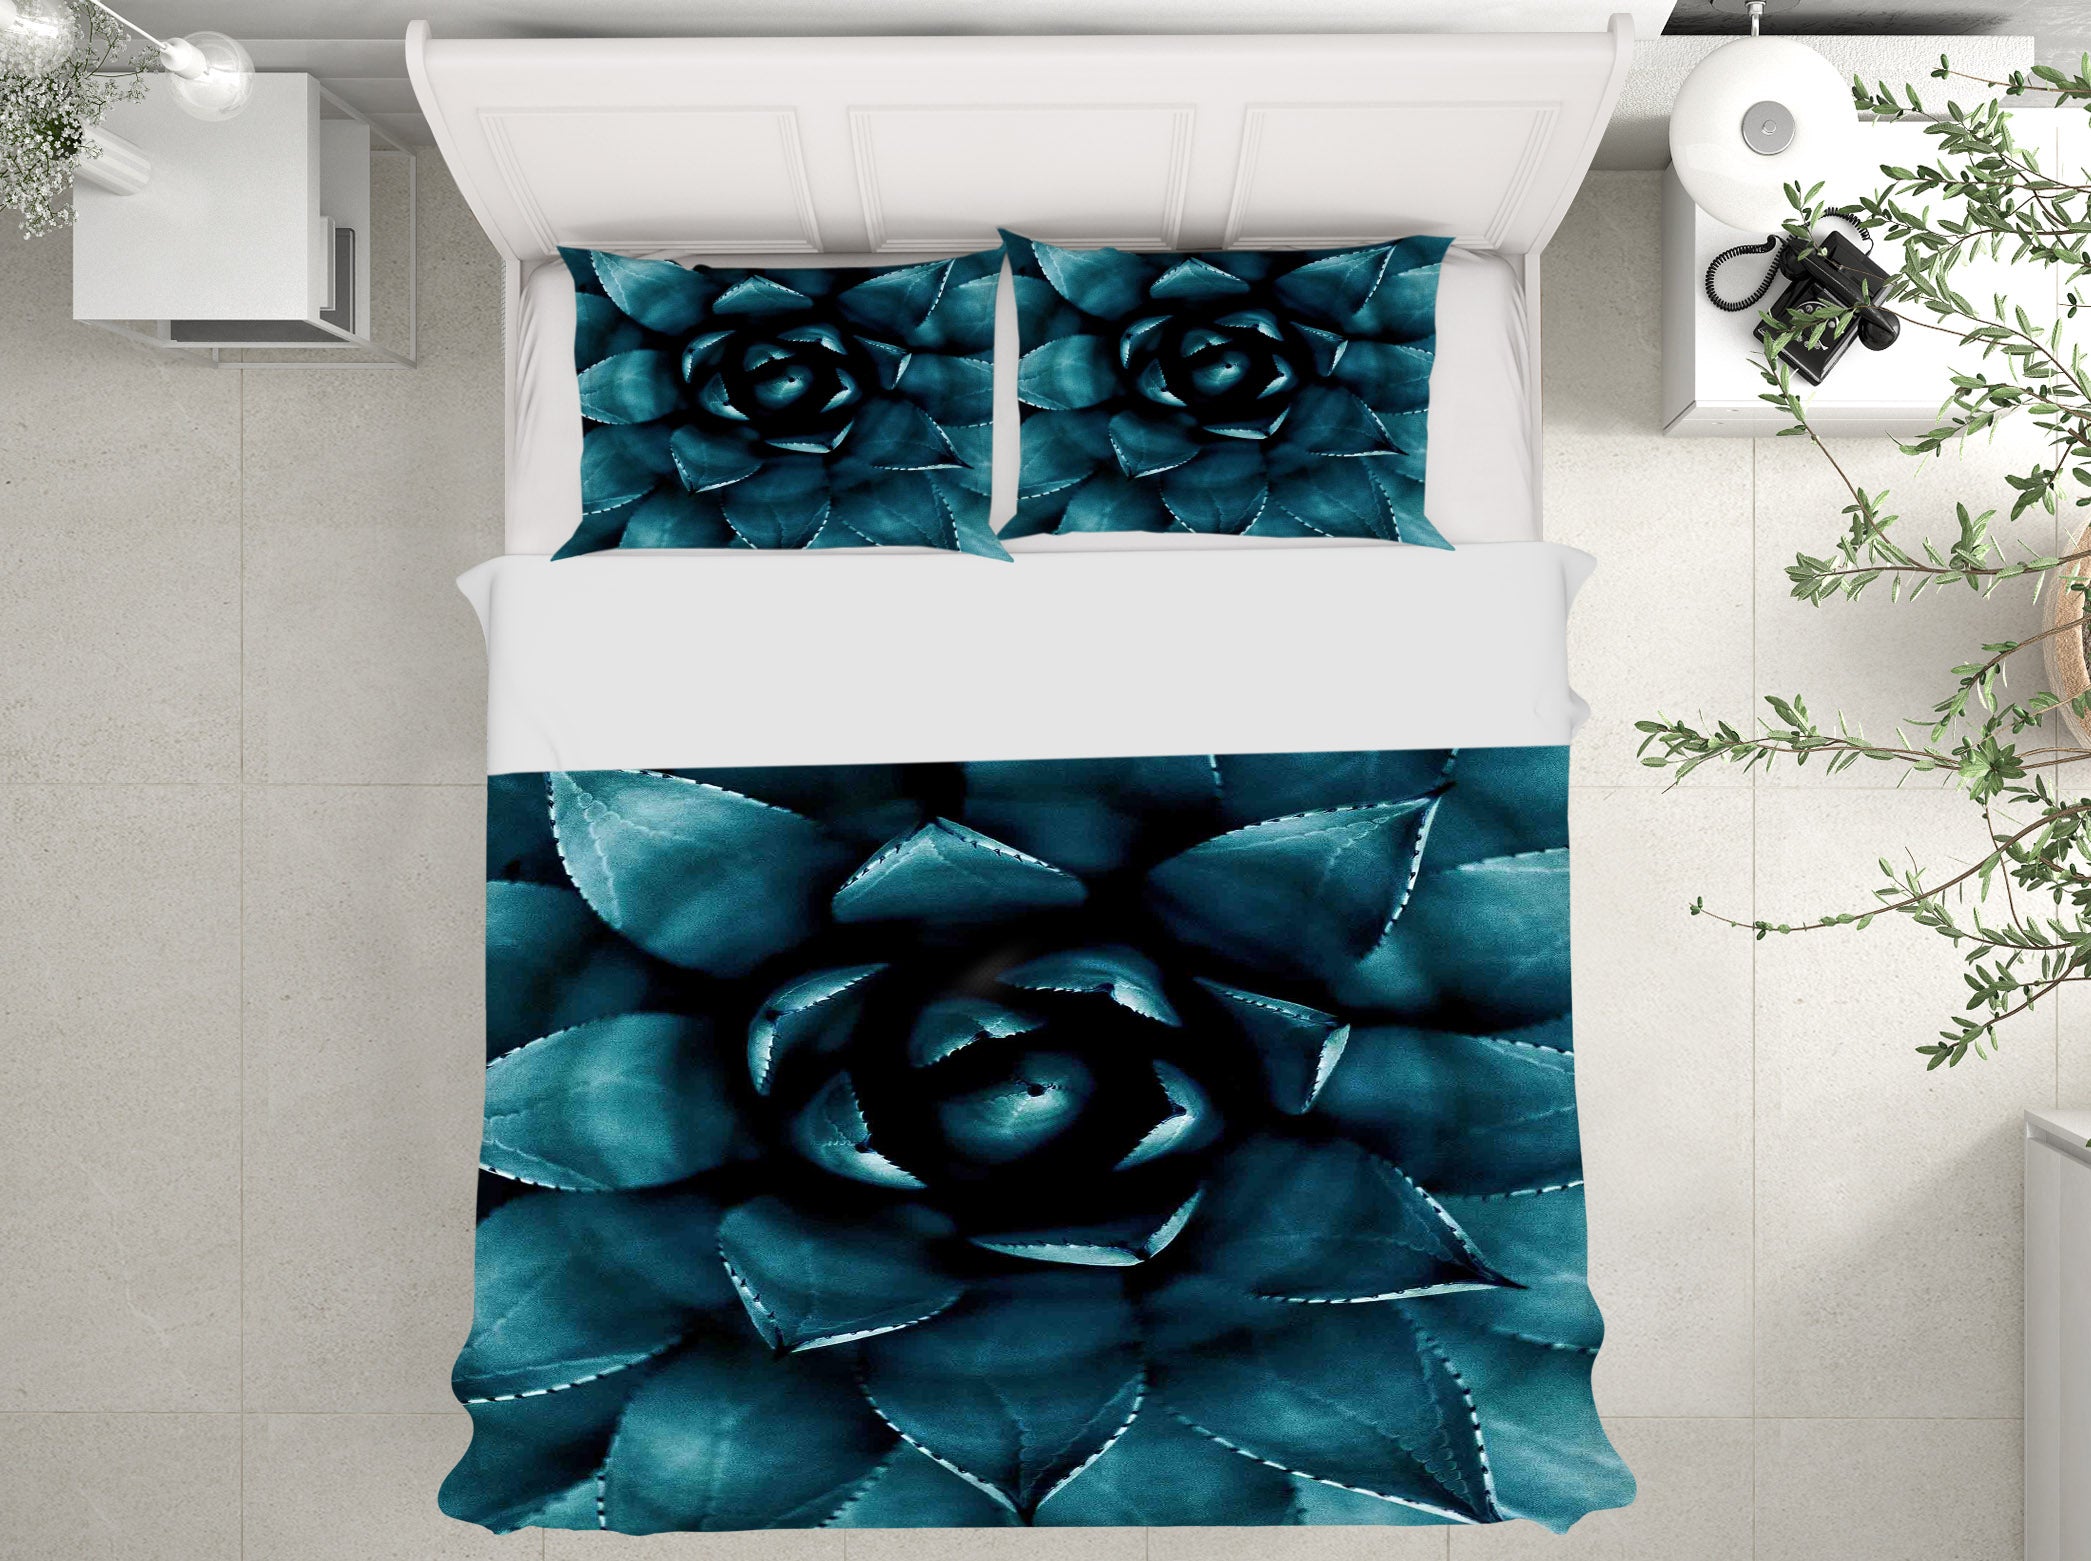 3D Green Flesh 2102 Boris Draschoff Bedding Bed Pillowcases Quilt